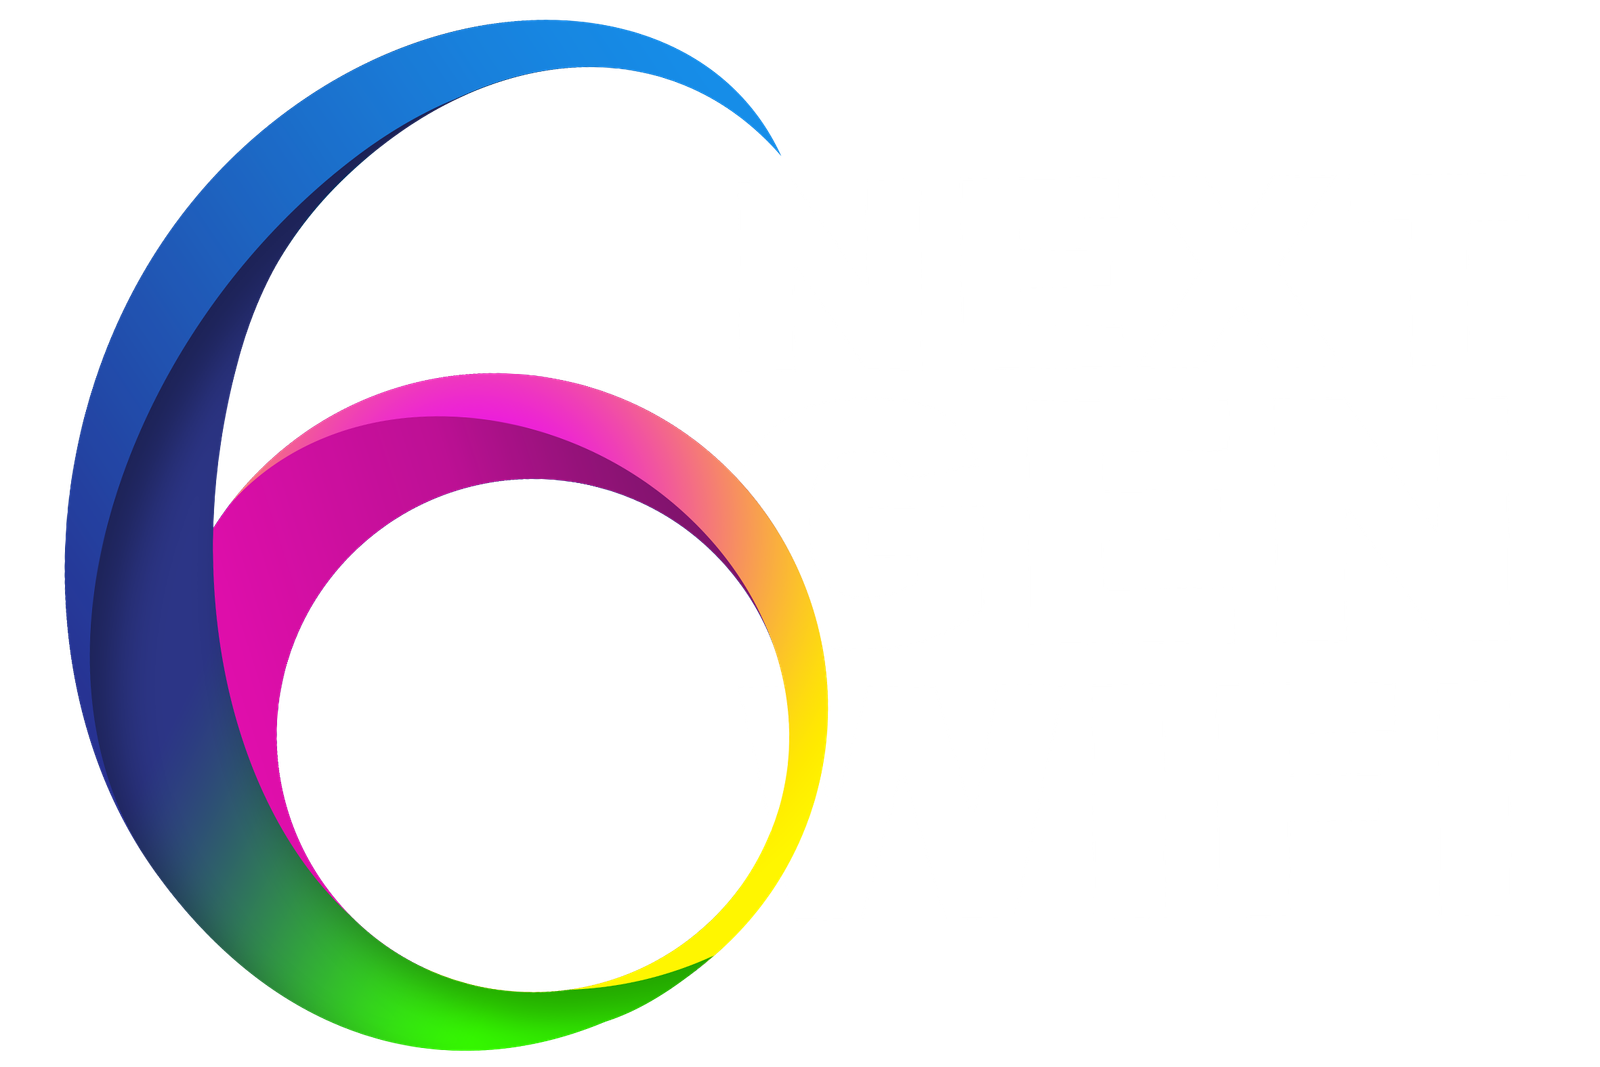 6NET Next Gen Wifi